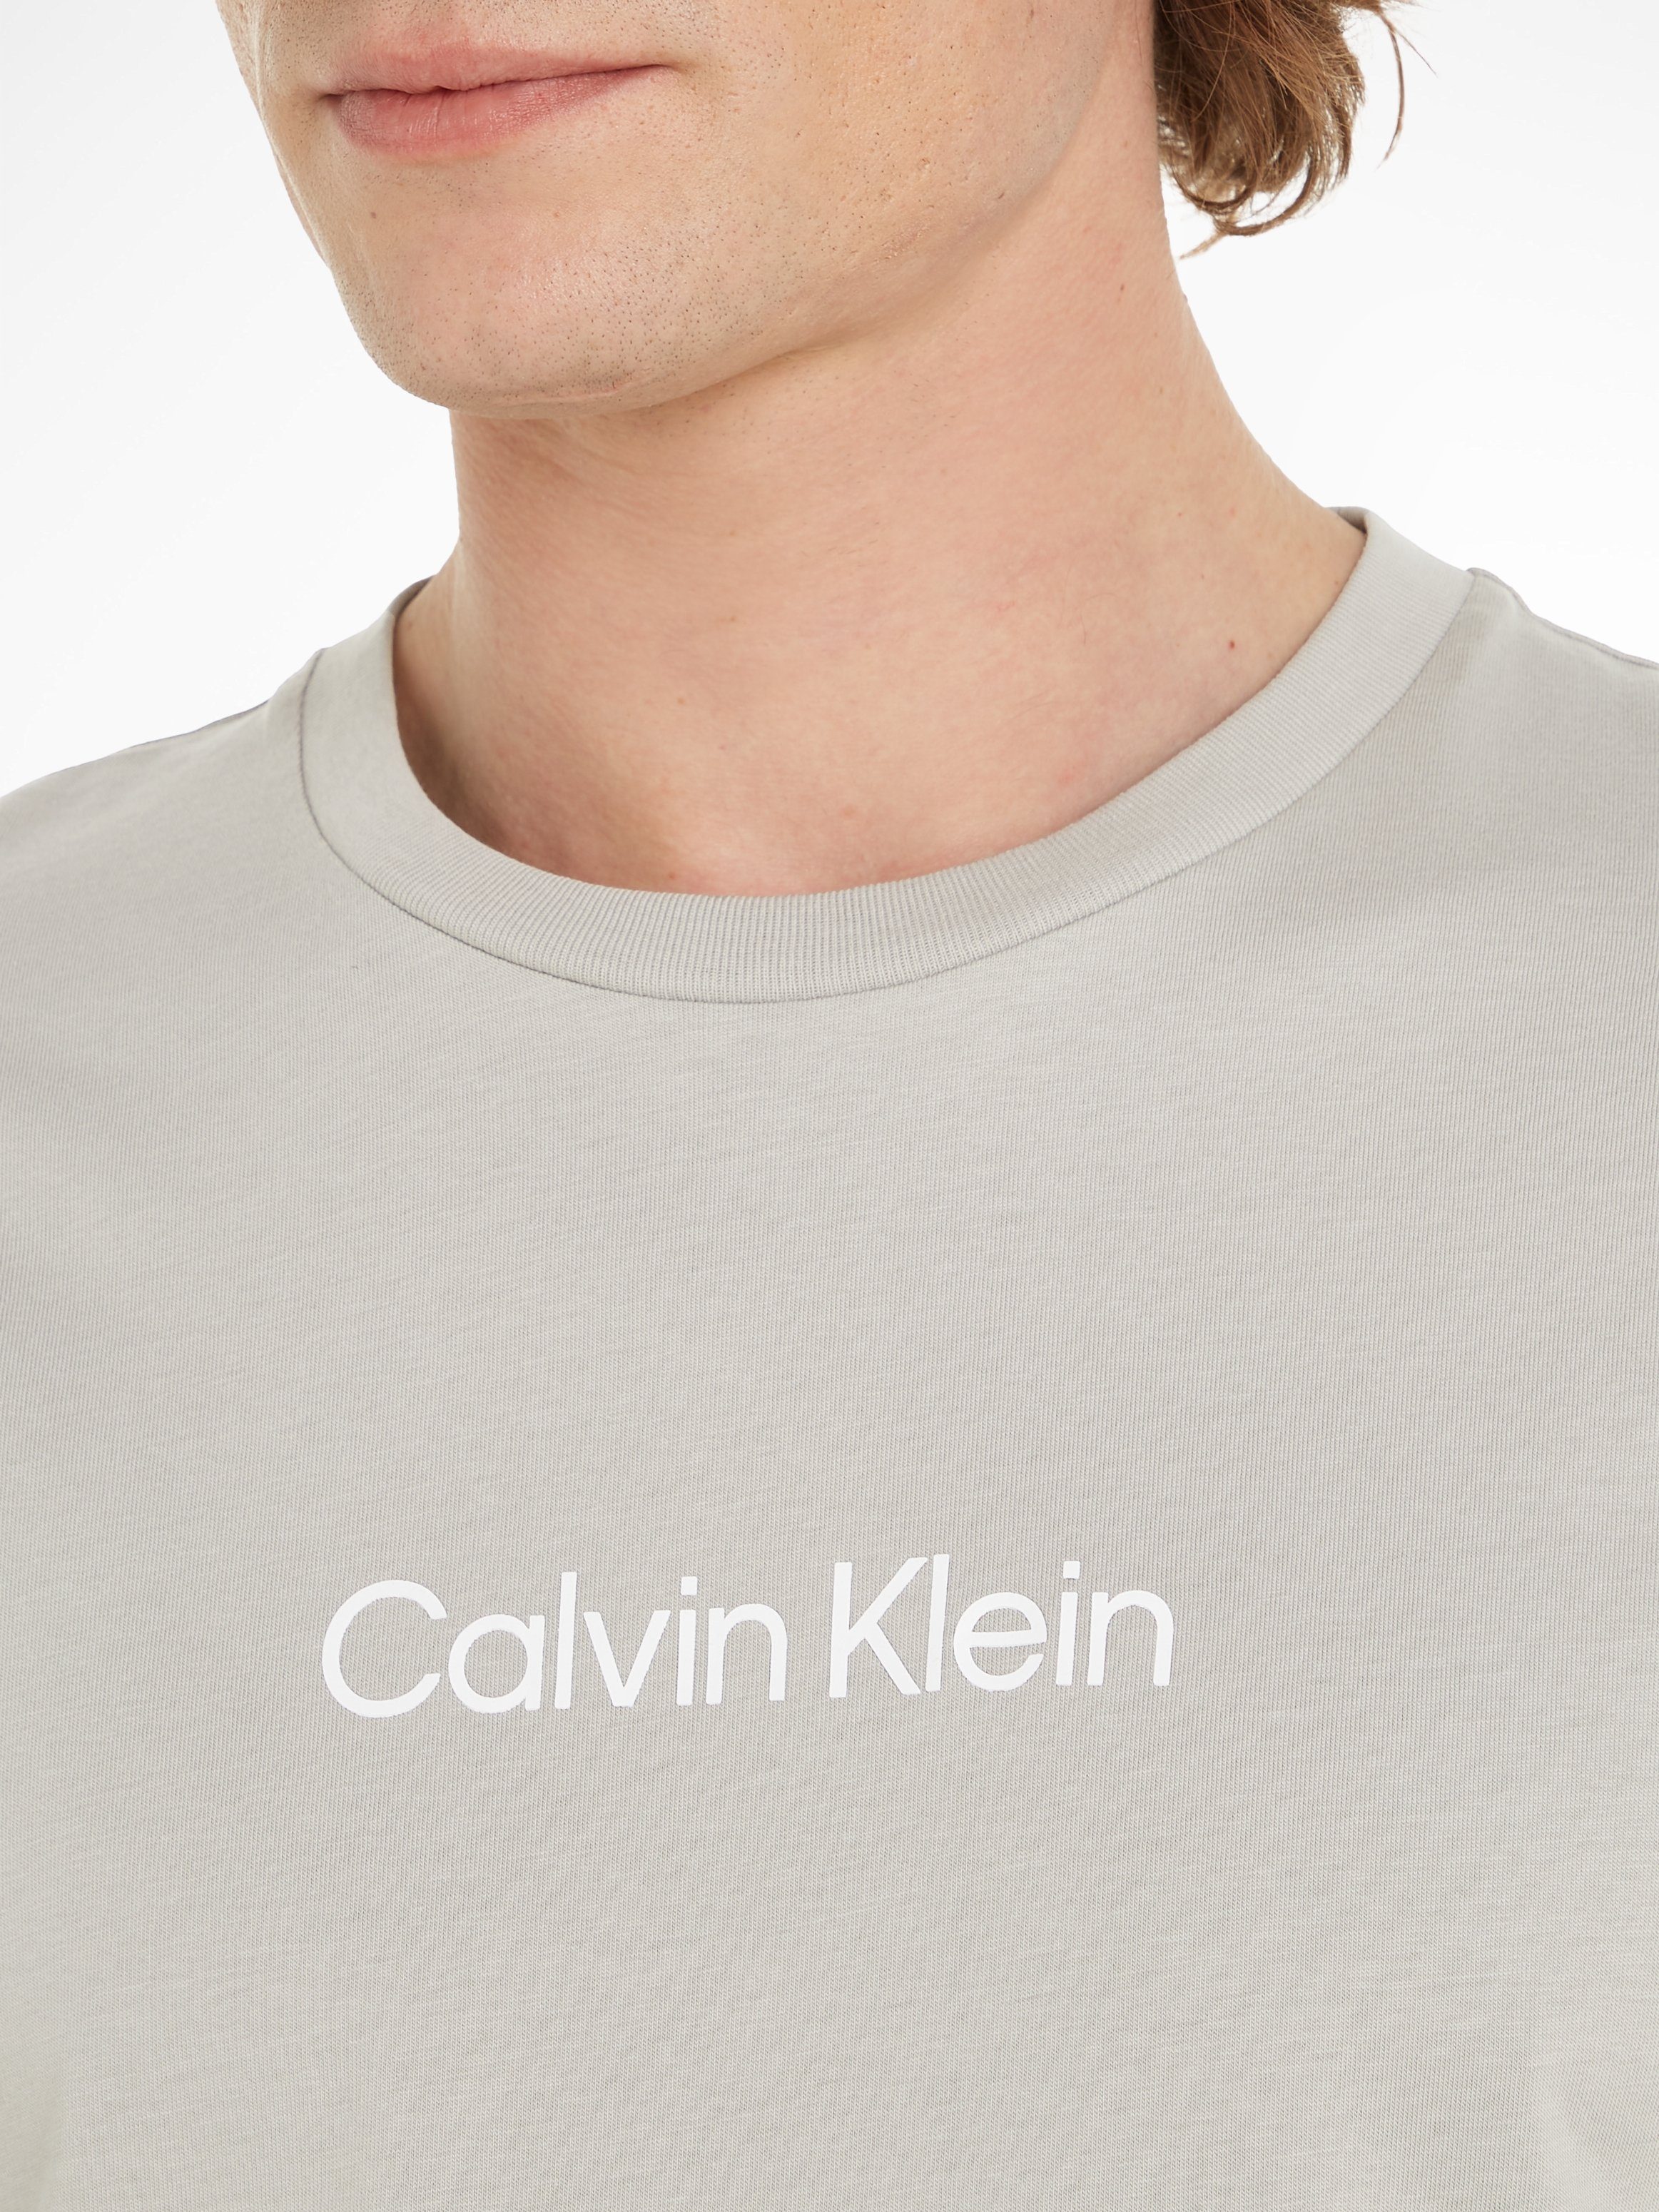 Klein T-SHIRT Markenlabel LOGO HERO mit T-Shirt Calvin COMFORT Ghost aufgedrucktem Gray